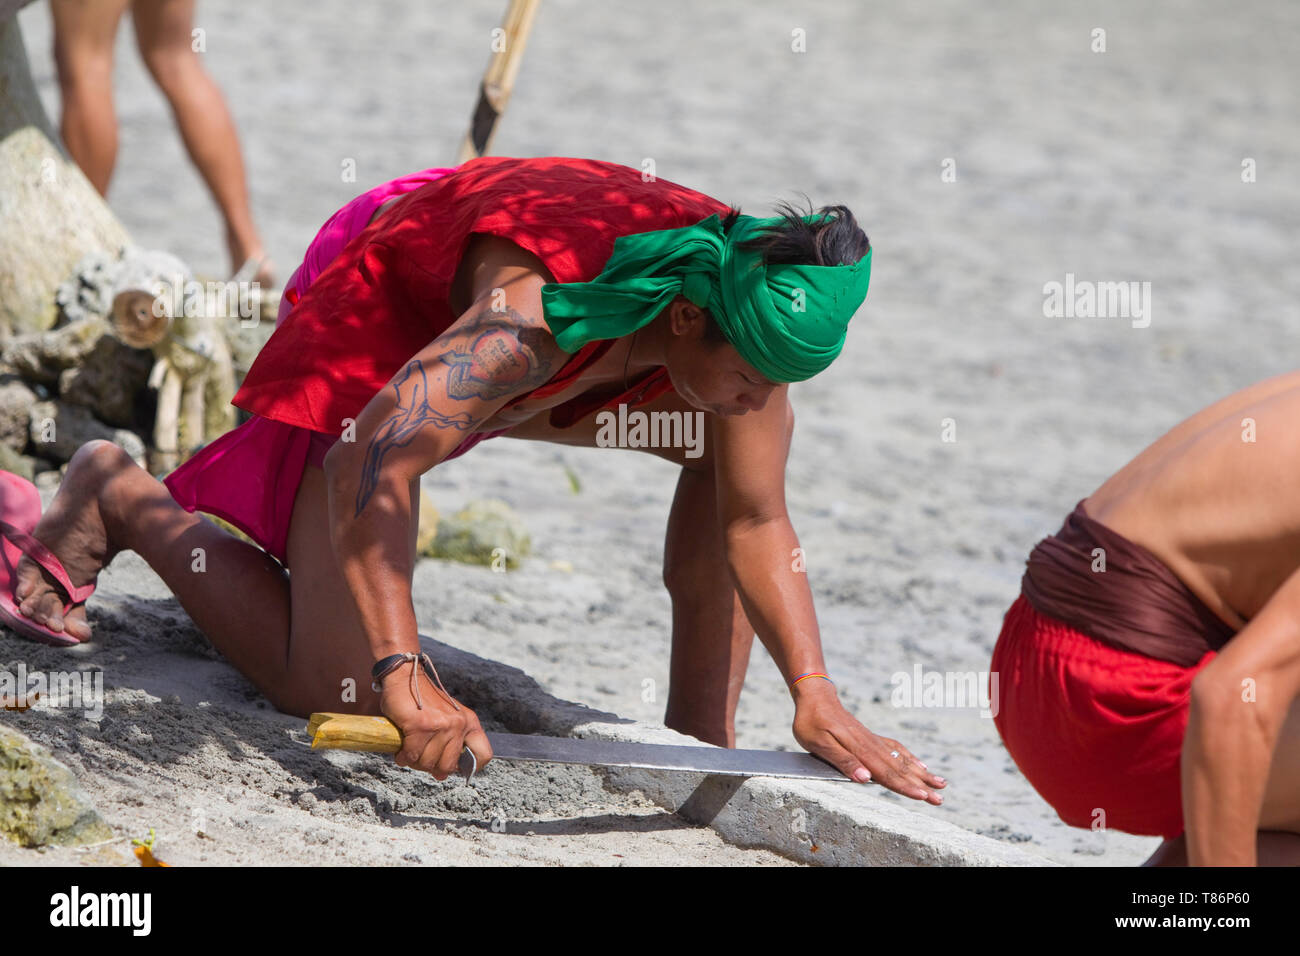 Darsteller nehmen an den jährlichen reinactnment Festival der Schlacht von Mactan, Lapu Lapu, Cebu, Philippinen. Die Veranstaltung zeigt die Ankunft der Spanischen Stockfoto